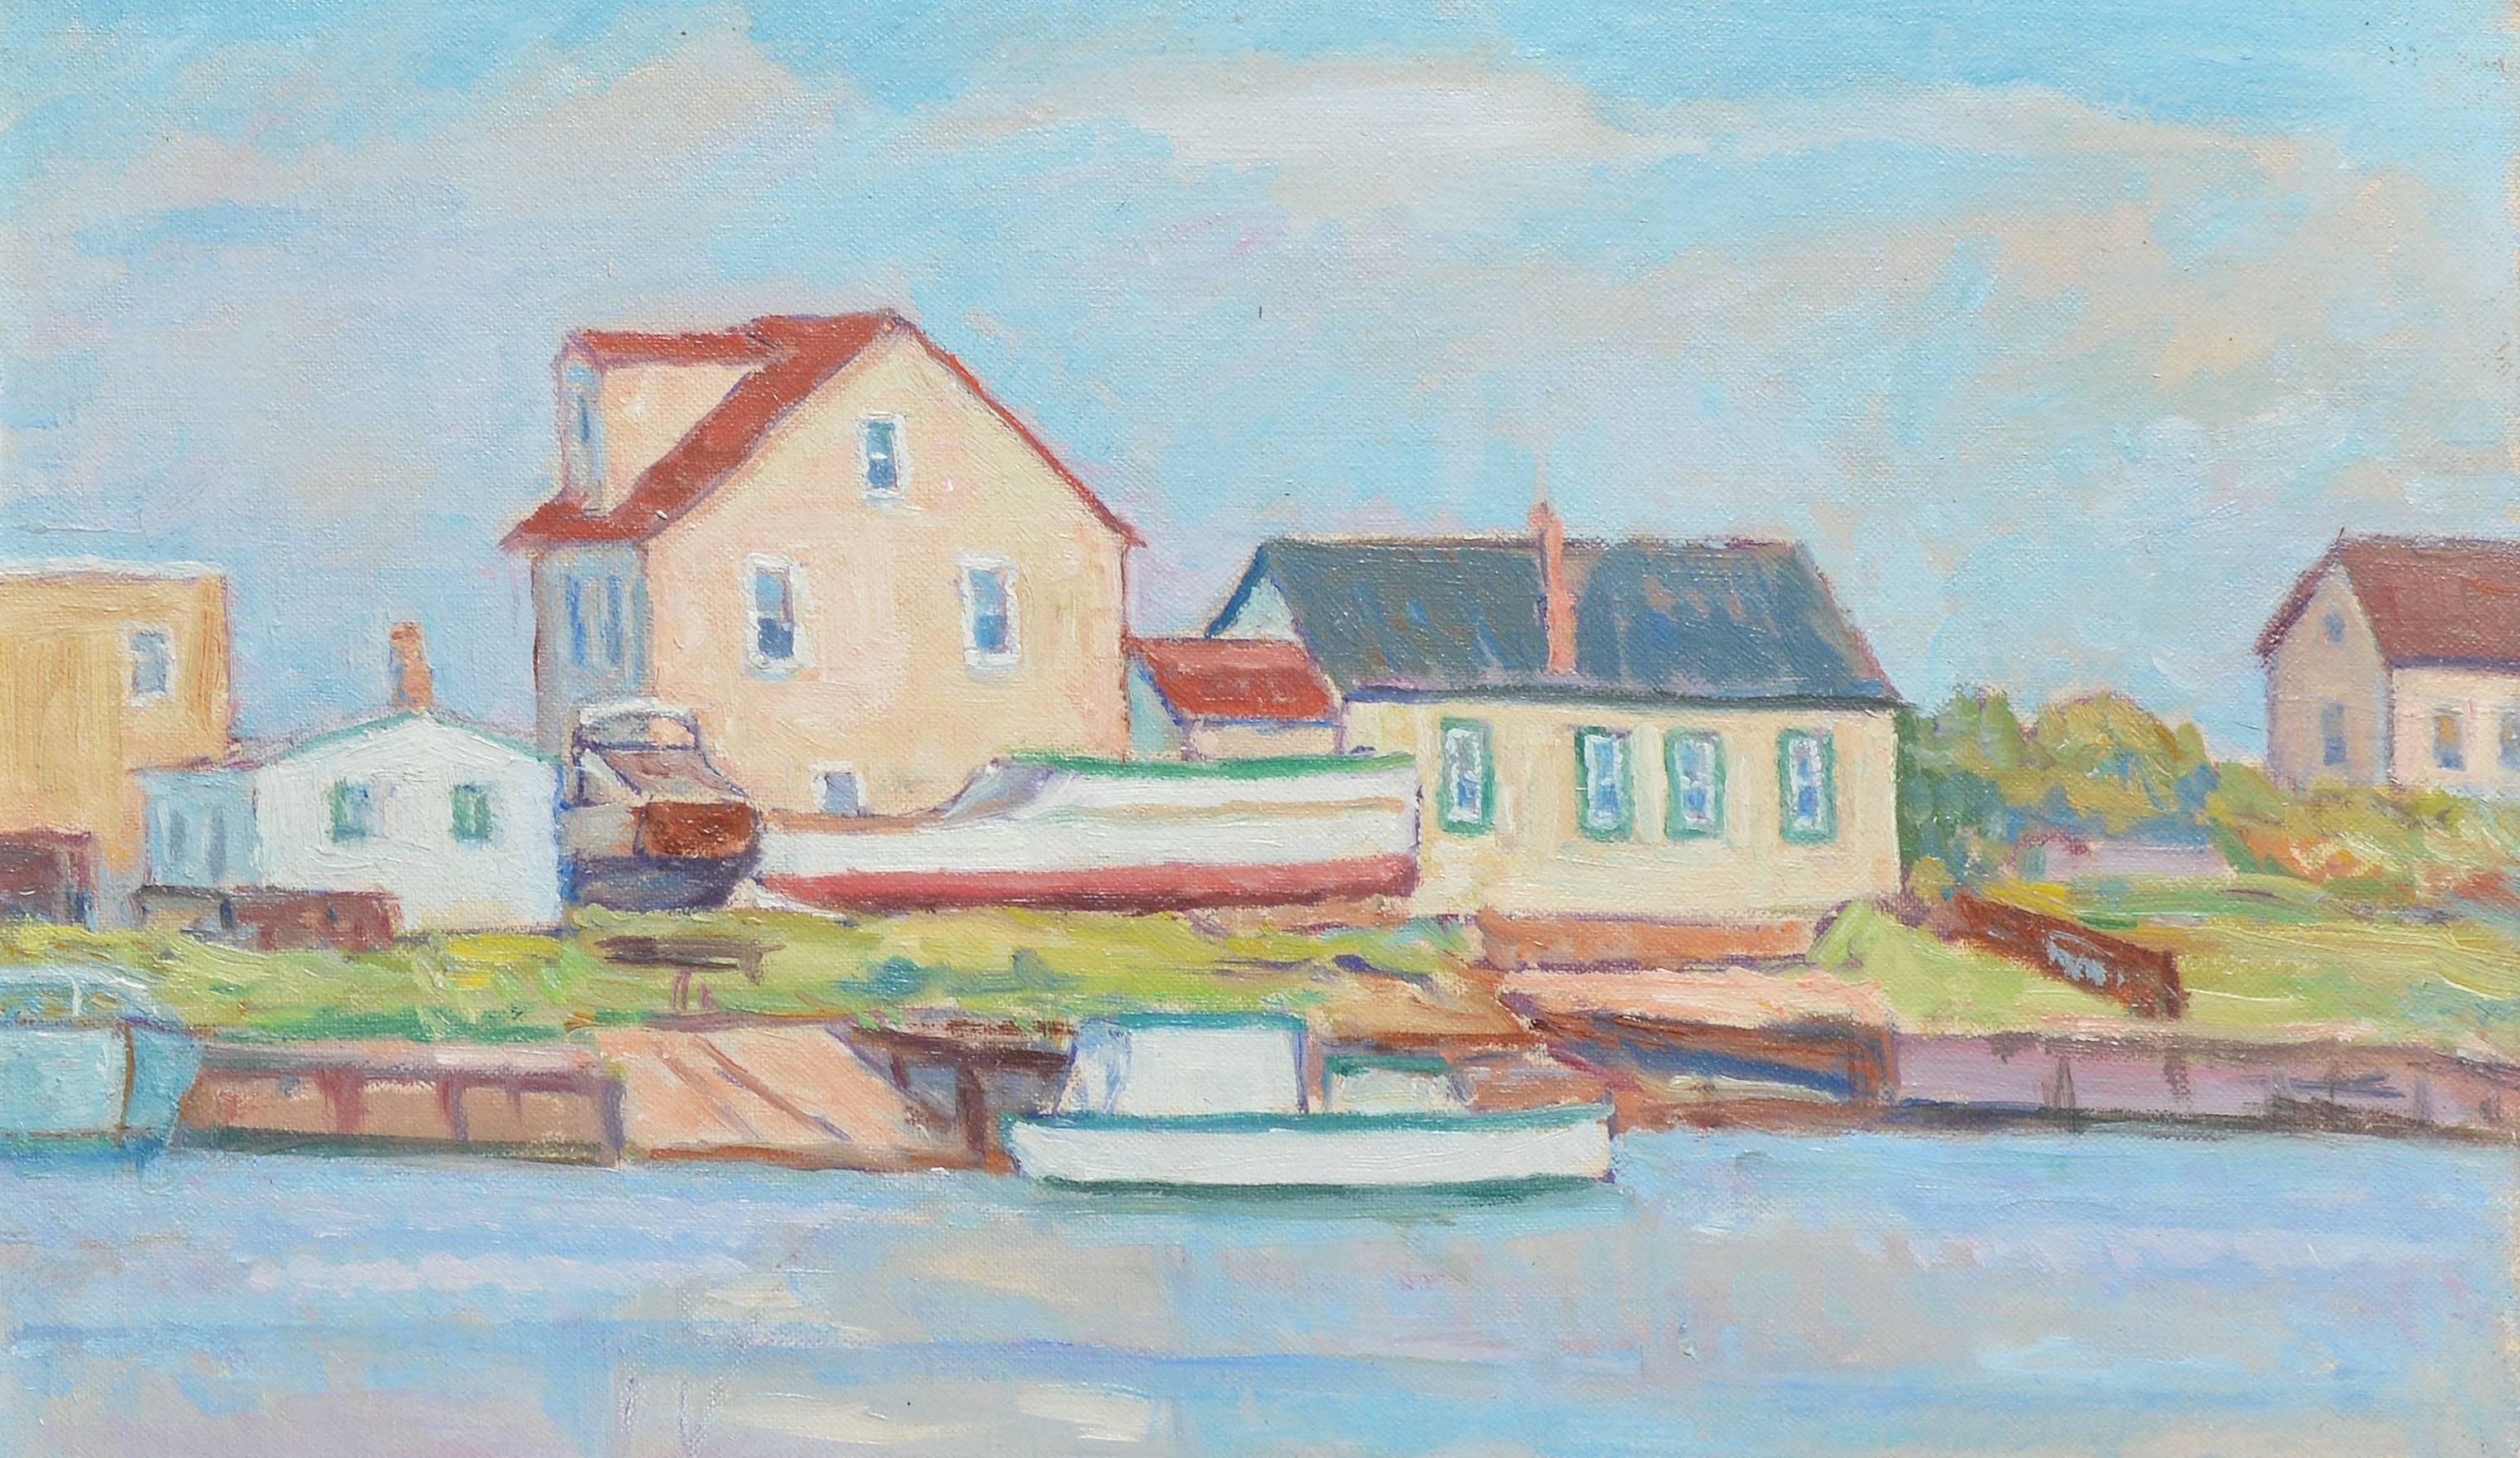 New England Impressionist Dock View by Joseph Grossman 2